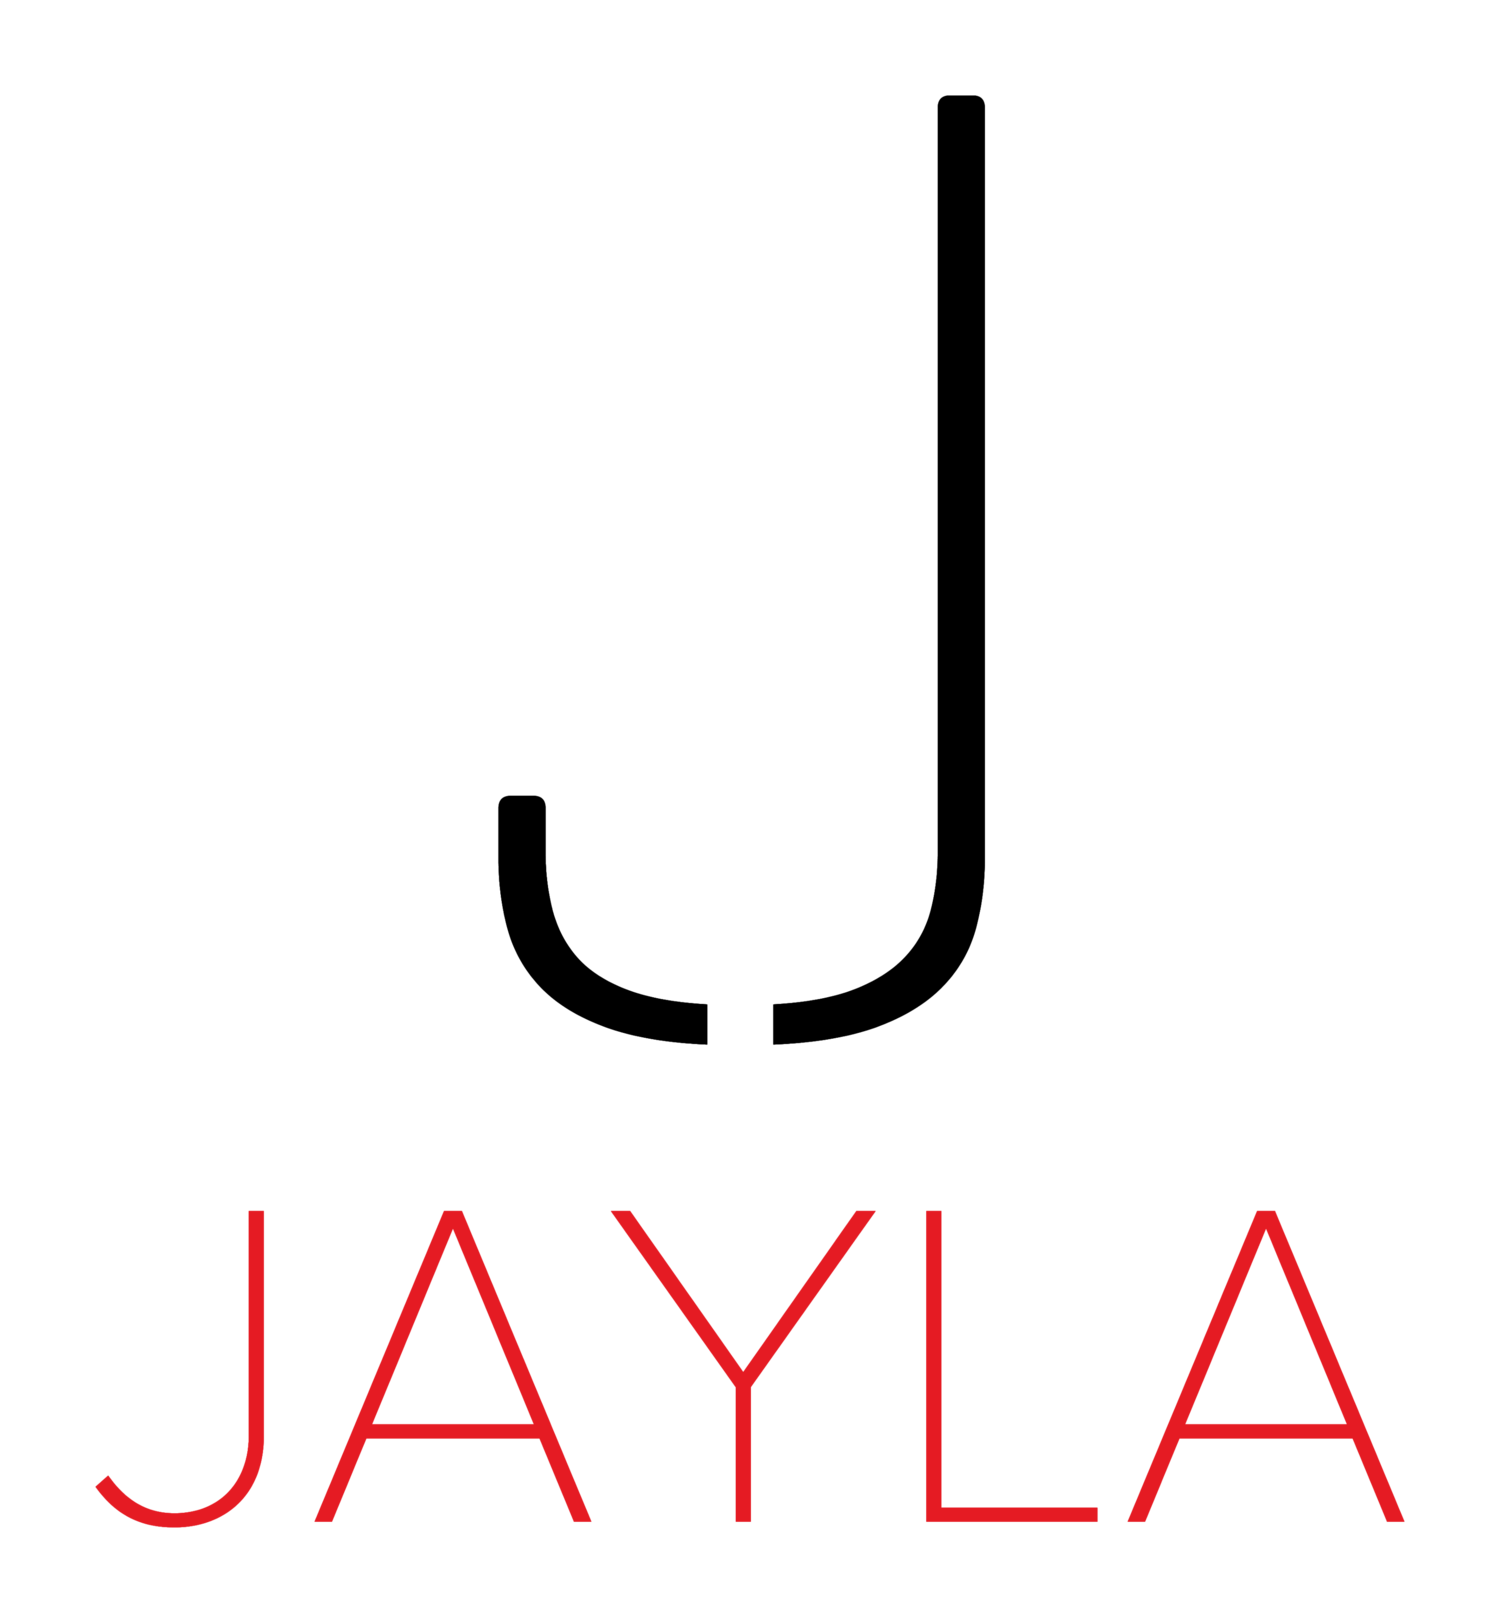 Miss Jayla